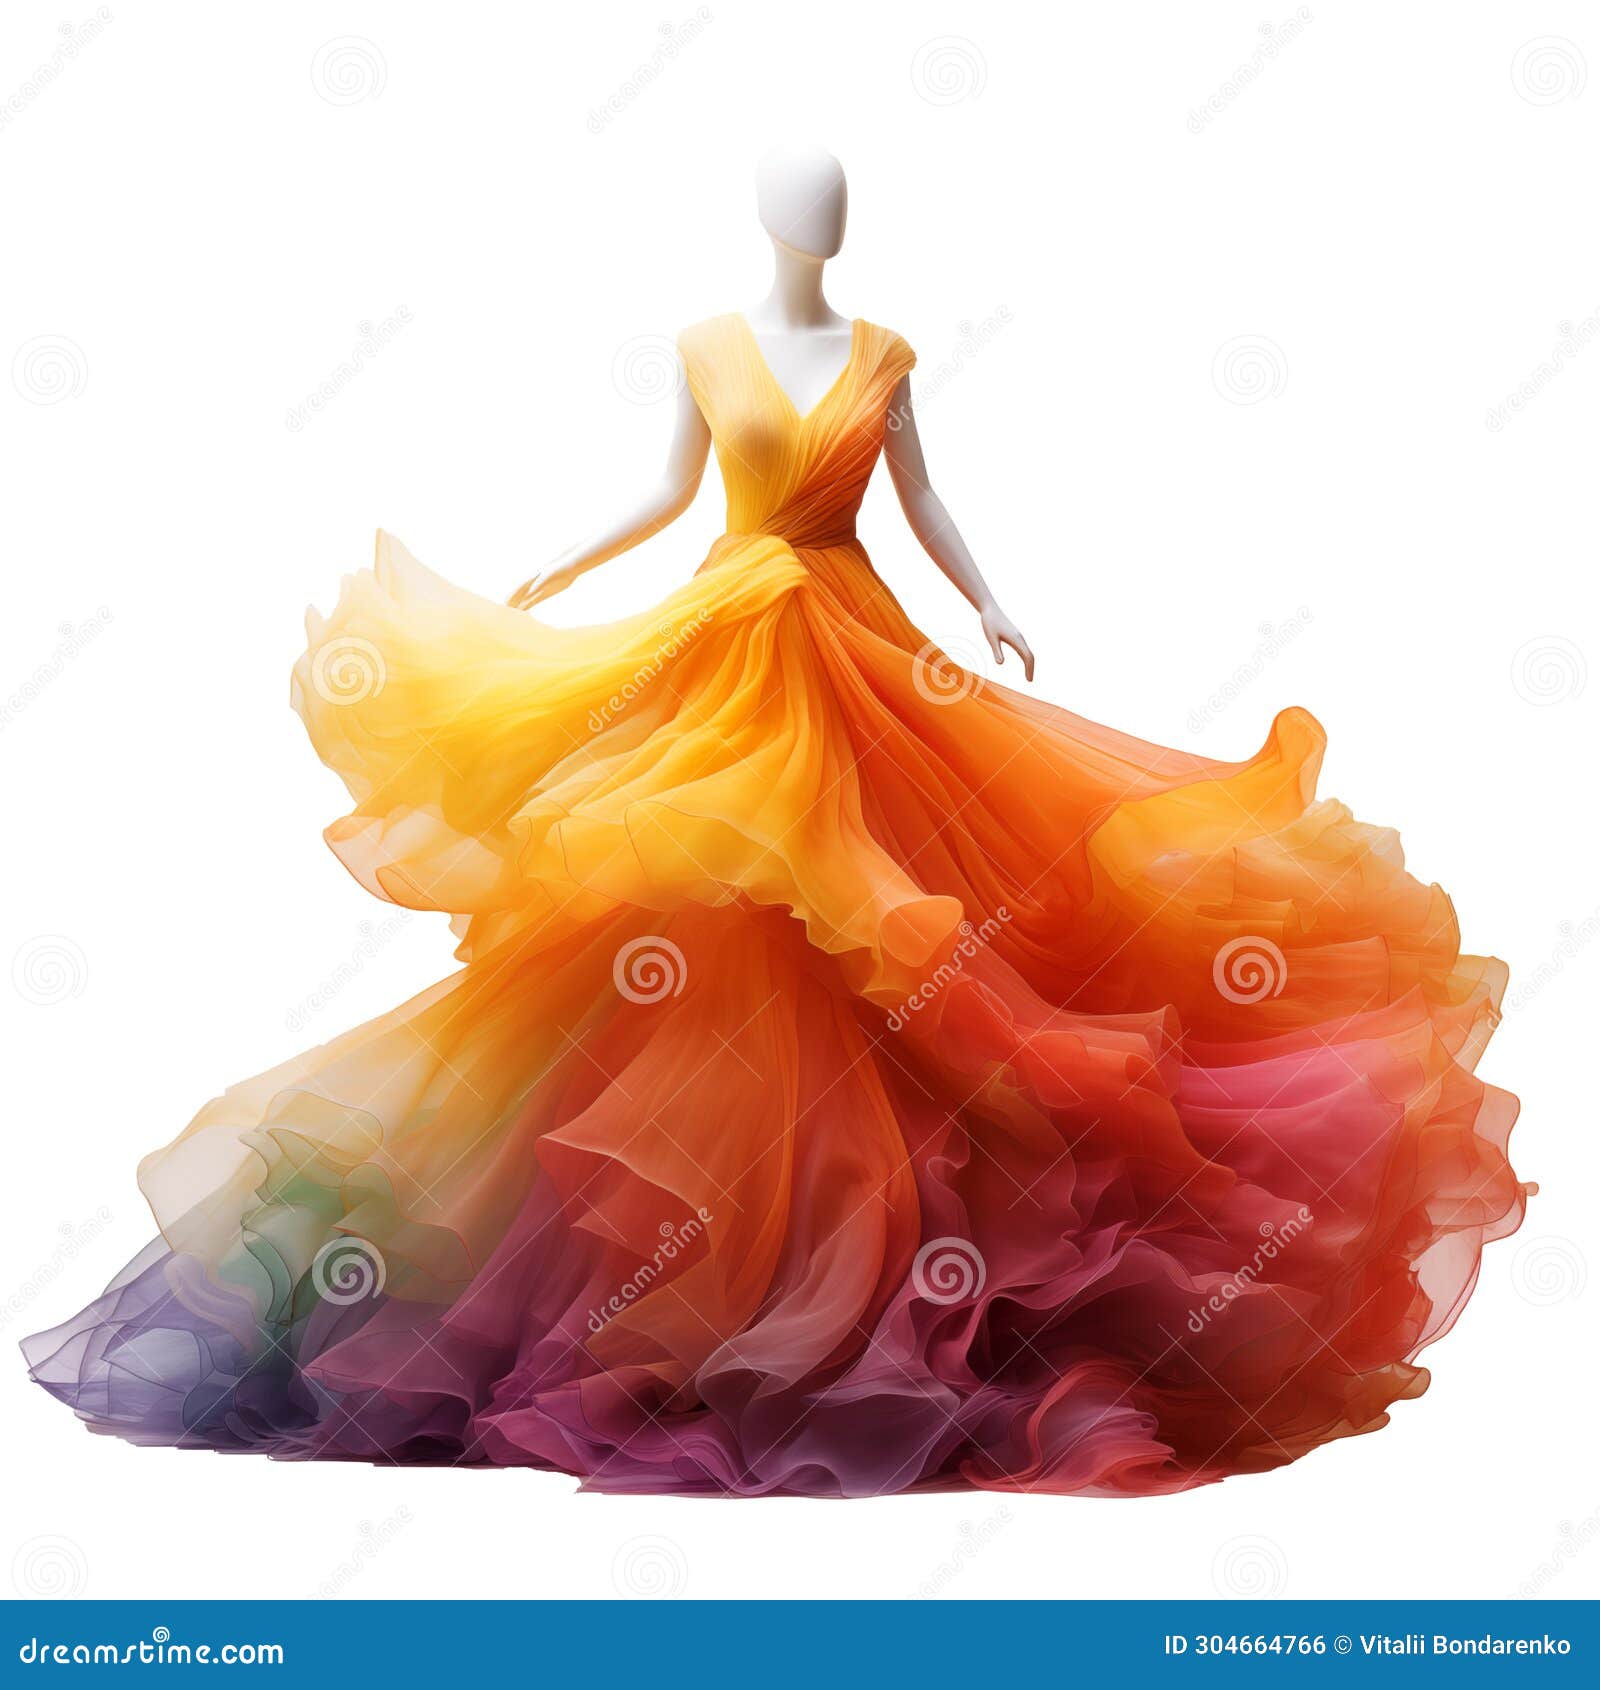 Download Floral Dress Transparent Background HQ PNG Image | FreePNGImg